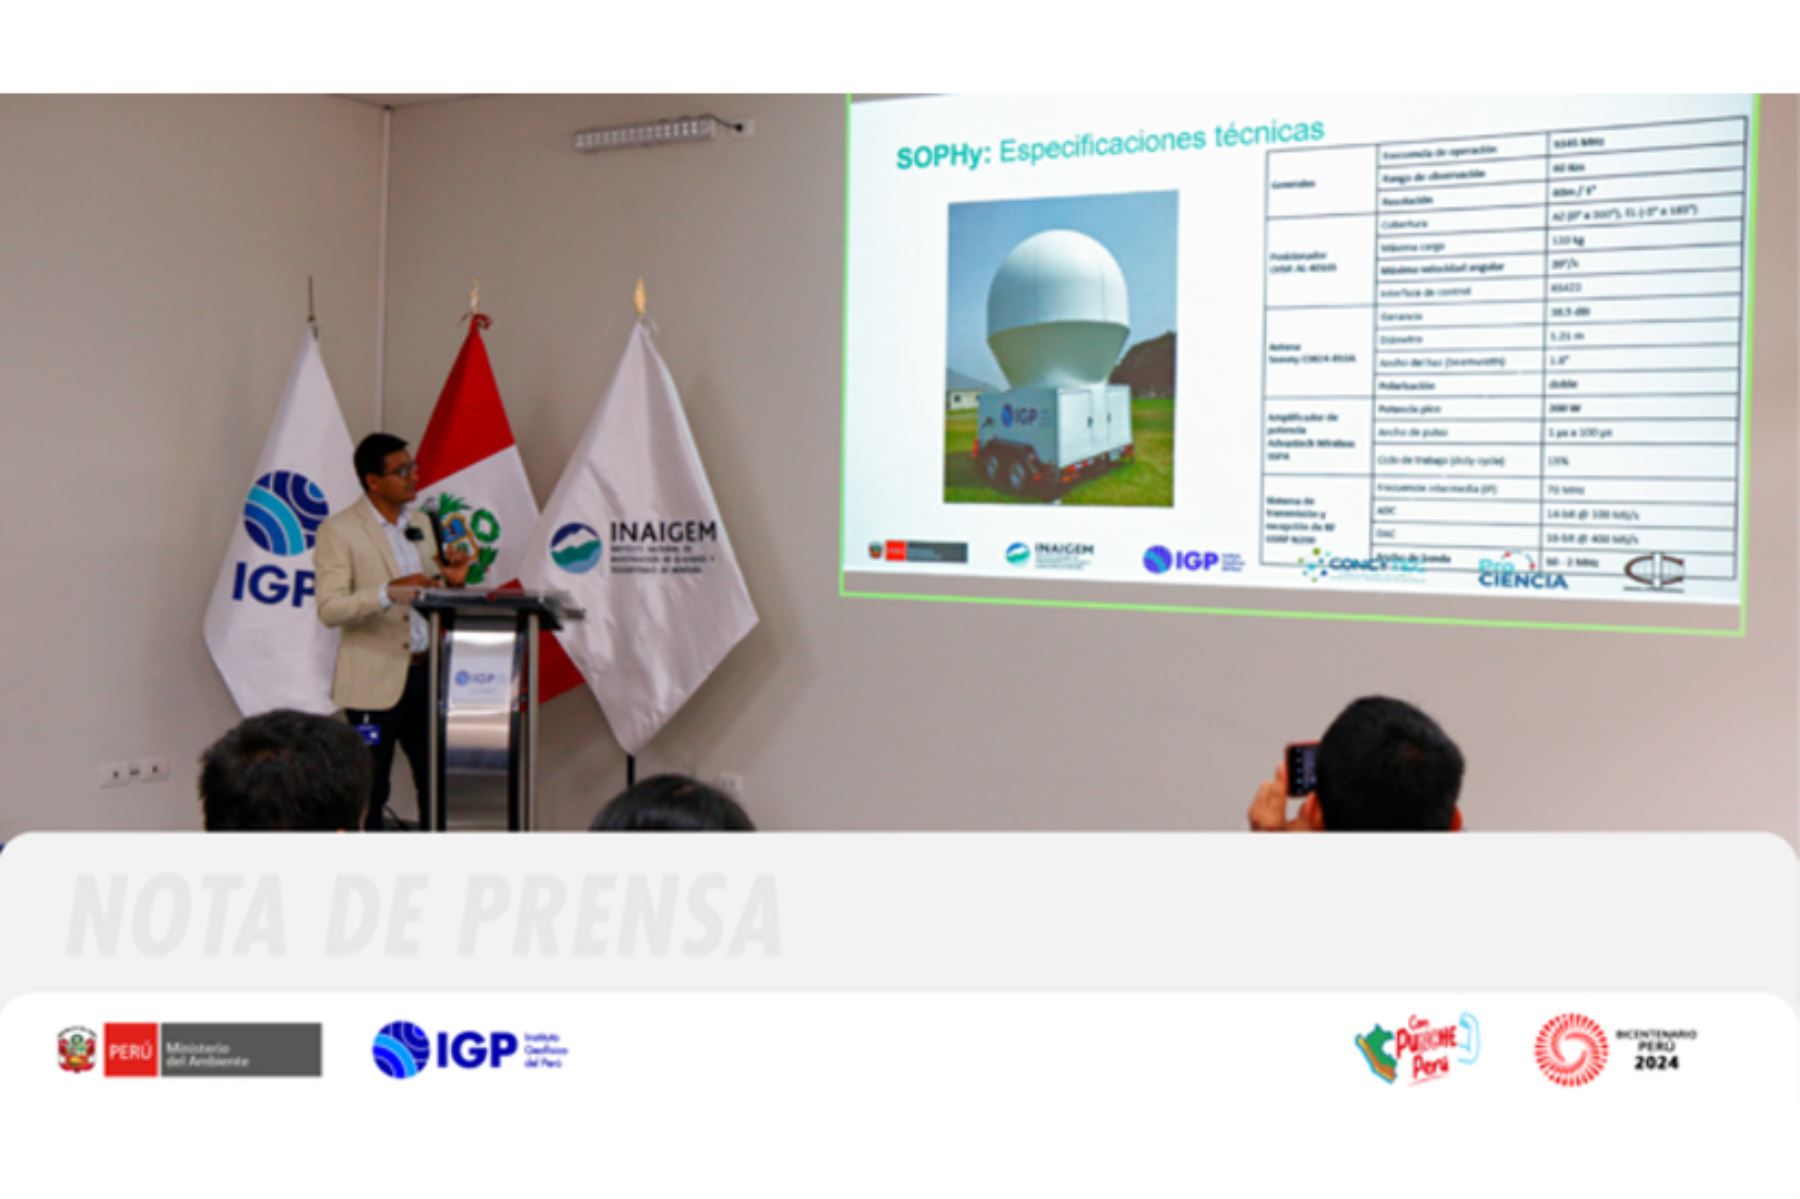 Concluyó con éxito el proyecto colaborativo entre IGP e Inaigem para monitorear el nevado Huaytapallana. Foto: ANDINA/IGP